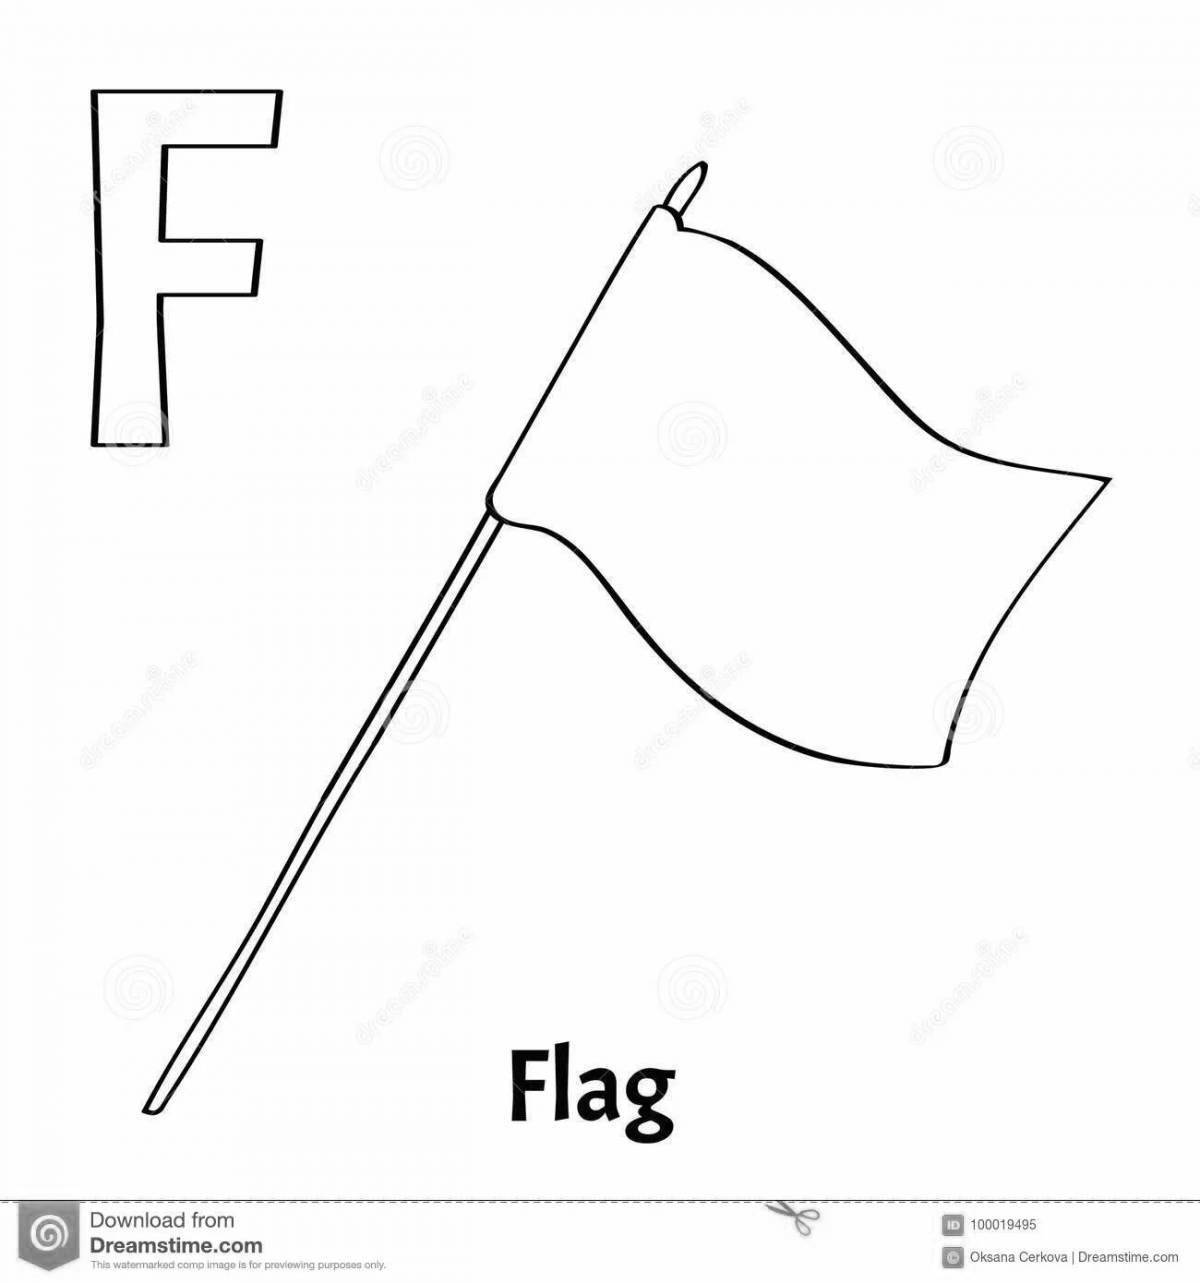 Раскраска жирный флаг для детей